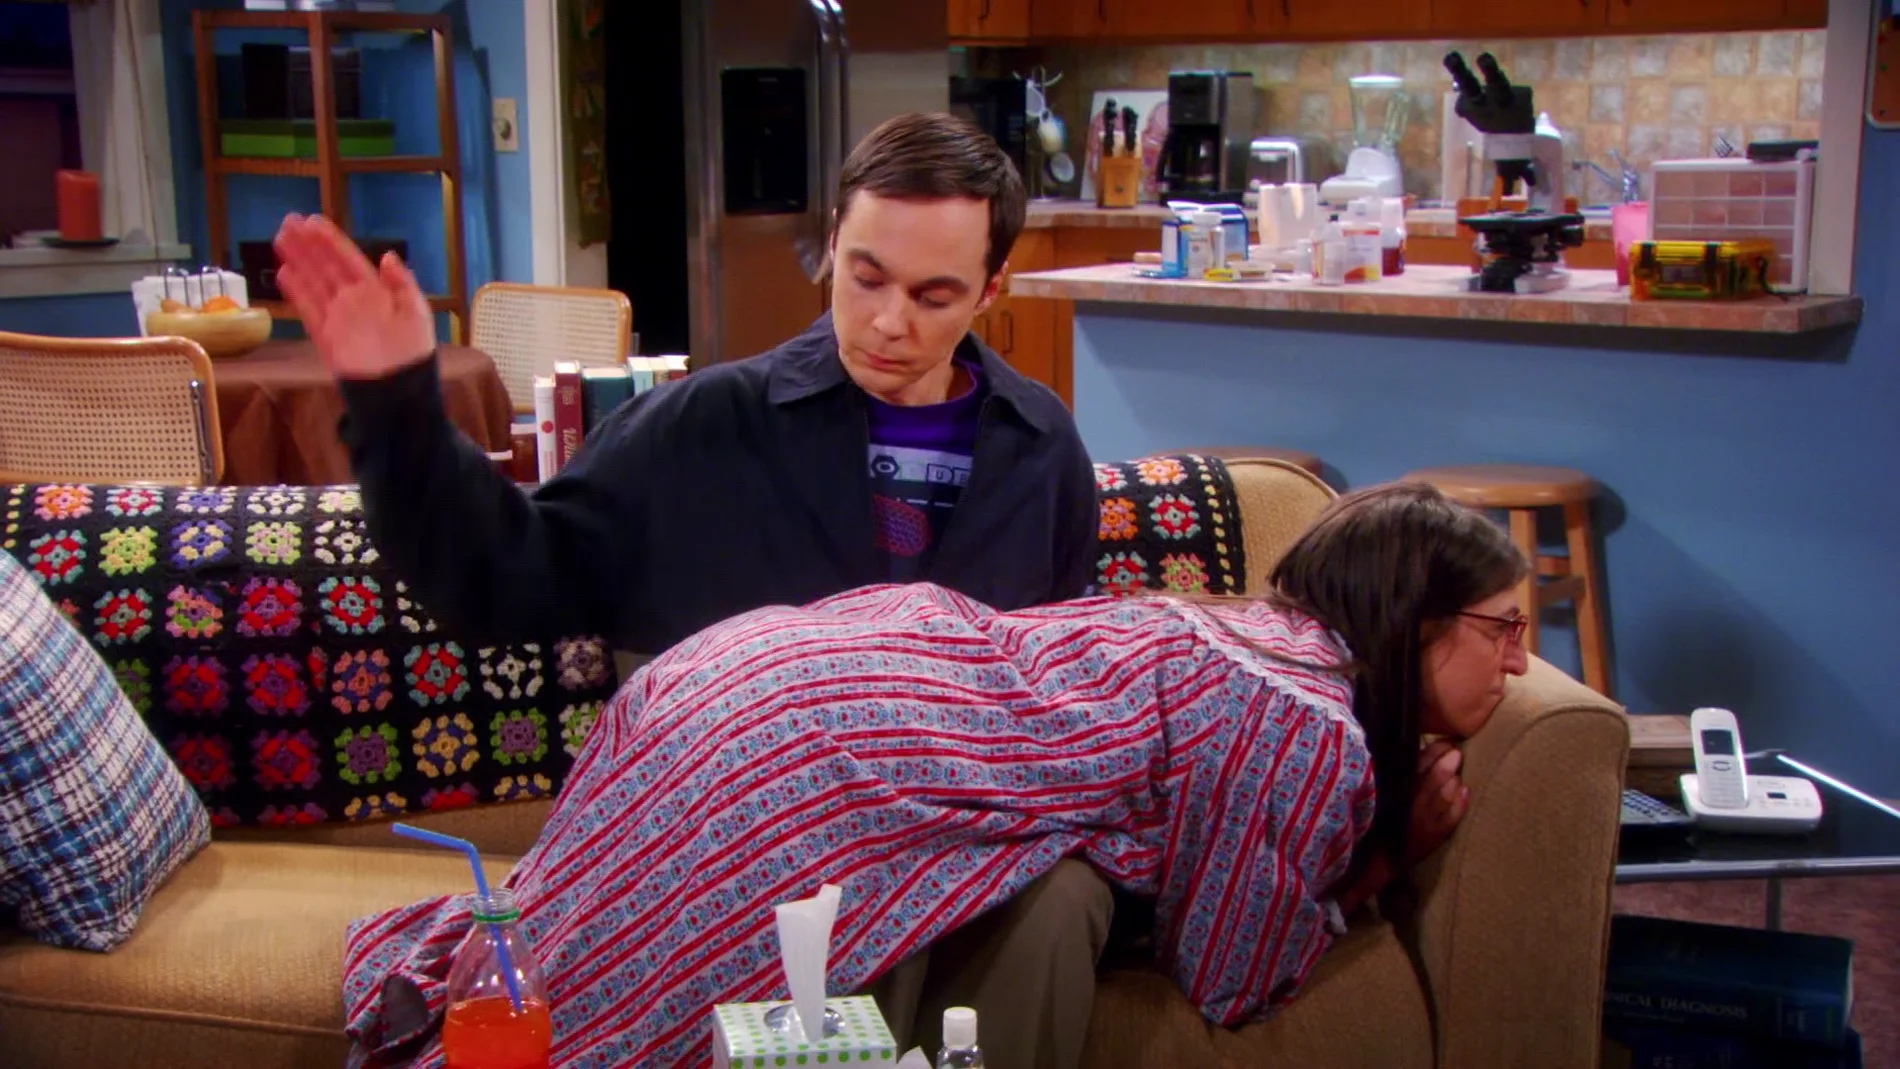 Sheldon castiga a Amy con unos azotes en el culo